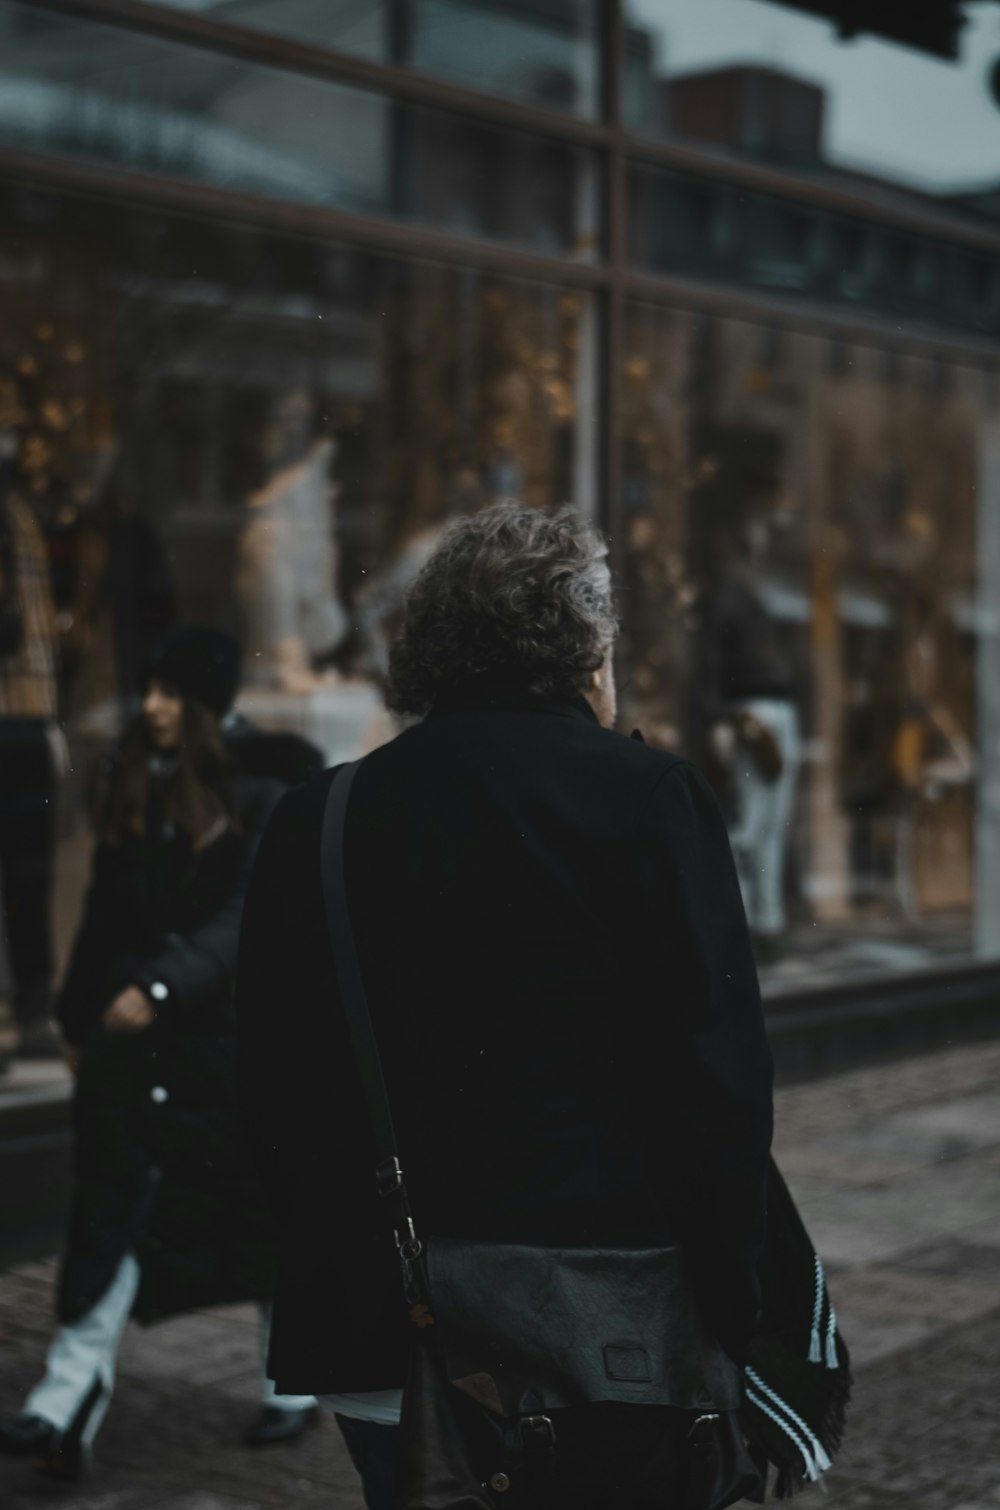 Mujer joven caminando en la calle de la ciudad, estilo de vida de otoño con  ropa de moda. Mujer profesional urbana en chaqueta de cuero negro,  leggings, falda Fotografía de stock 